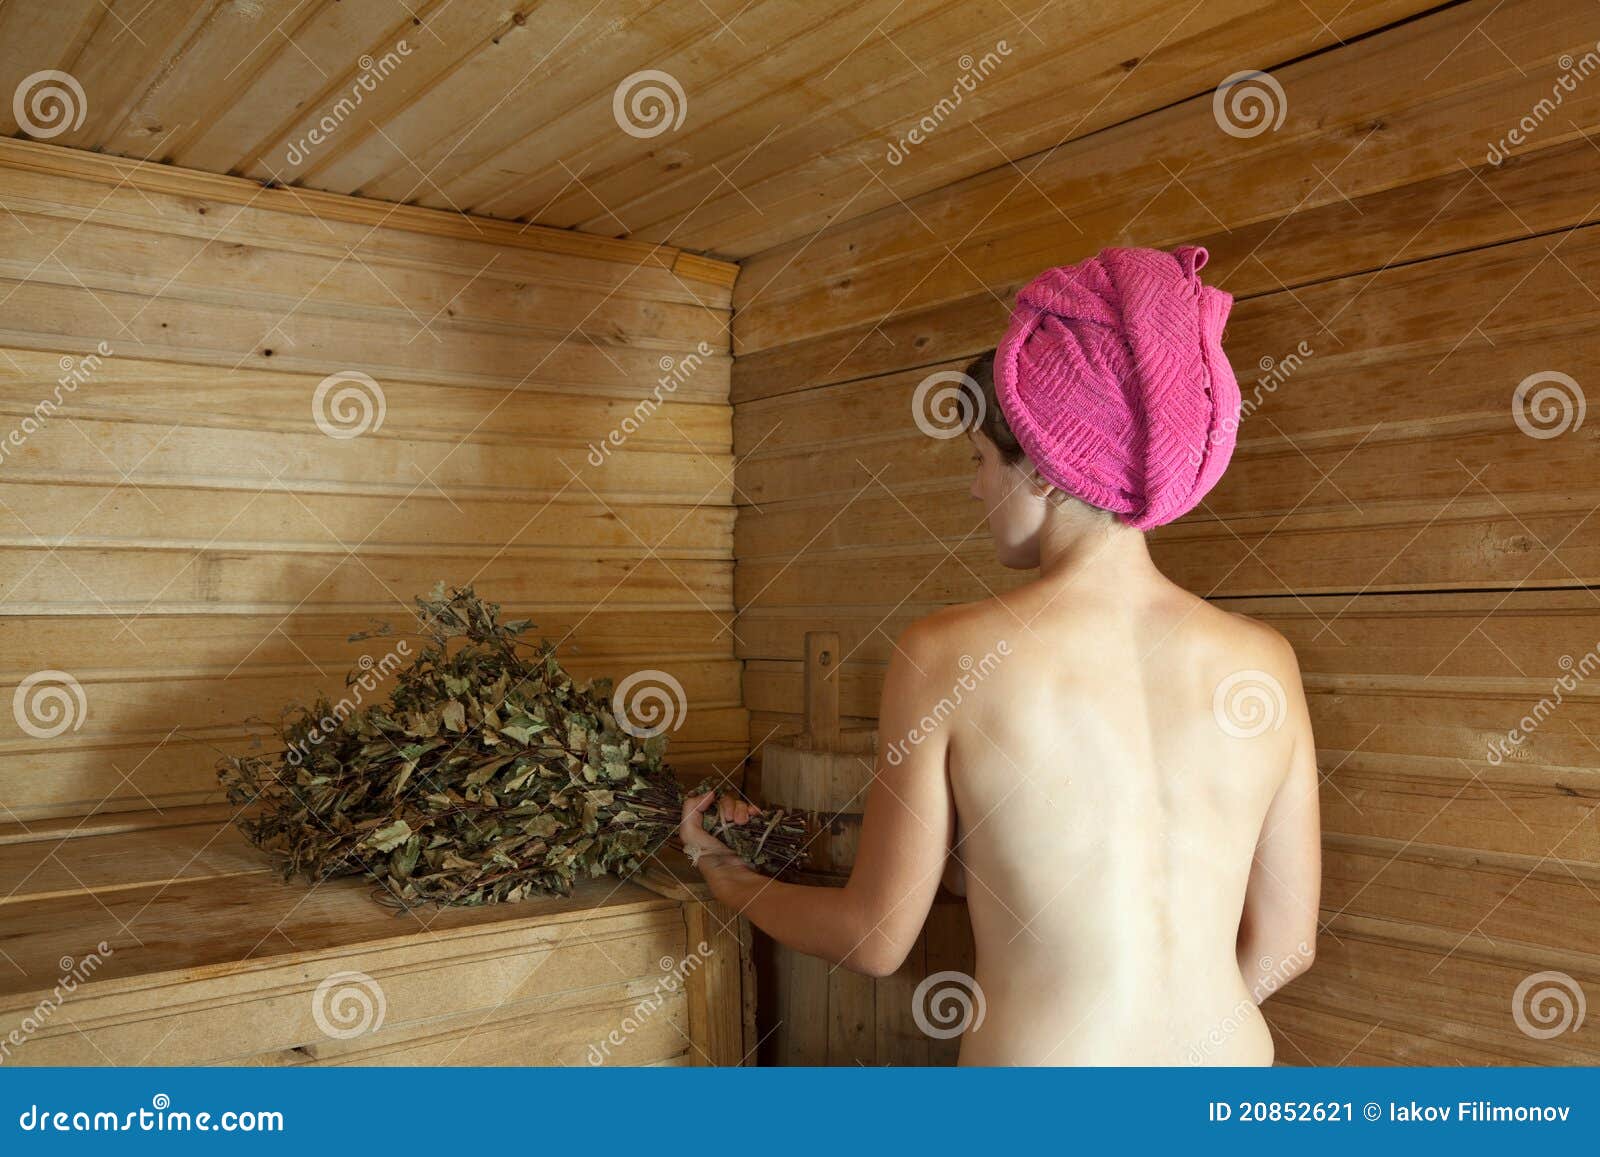 сонник мыться в бане голыми фото 37